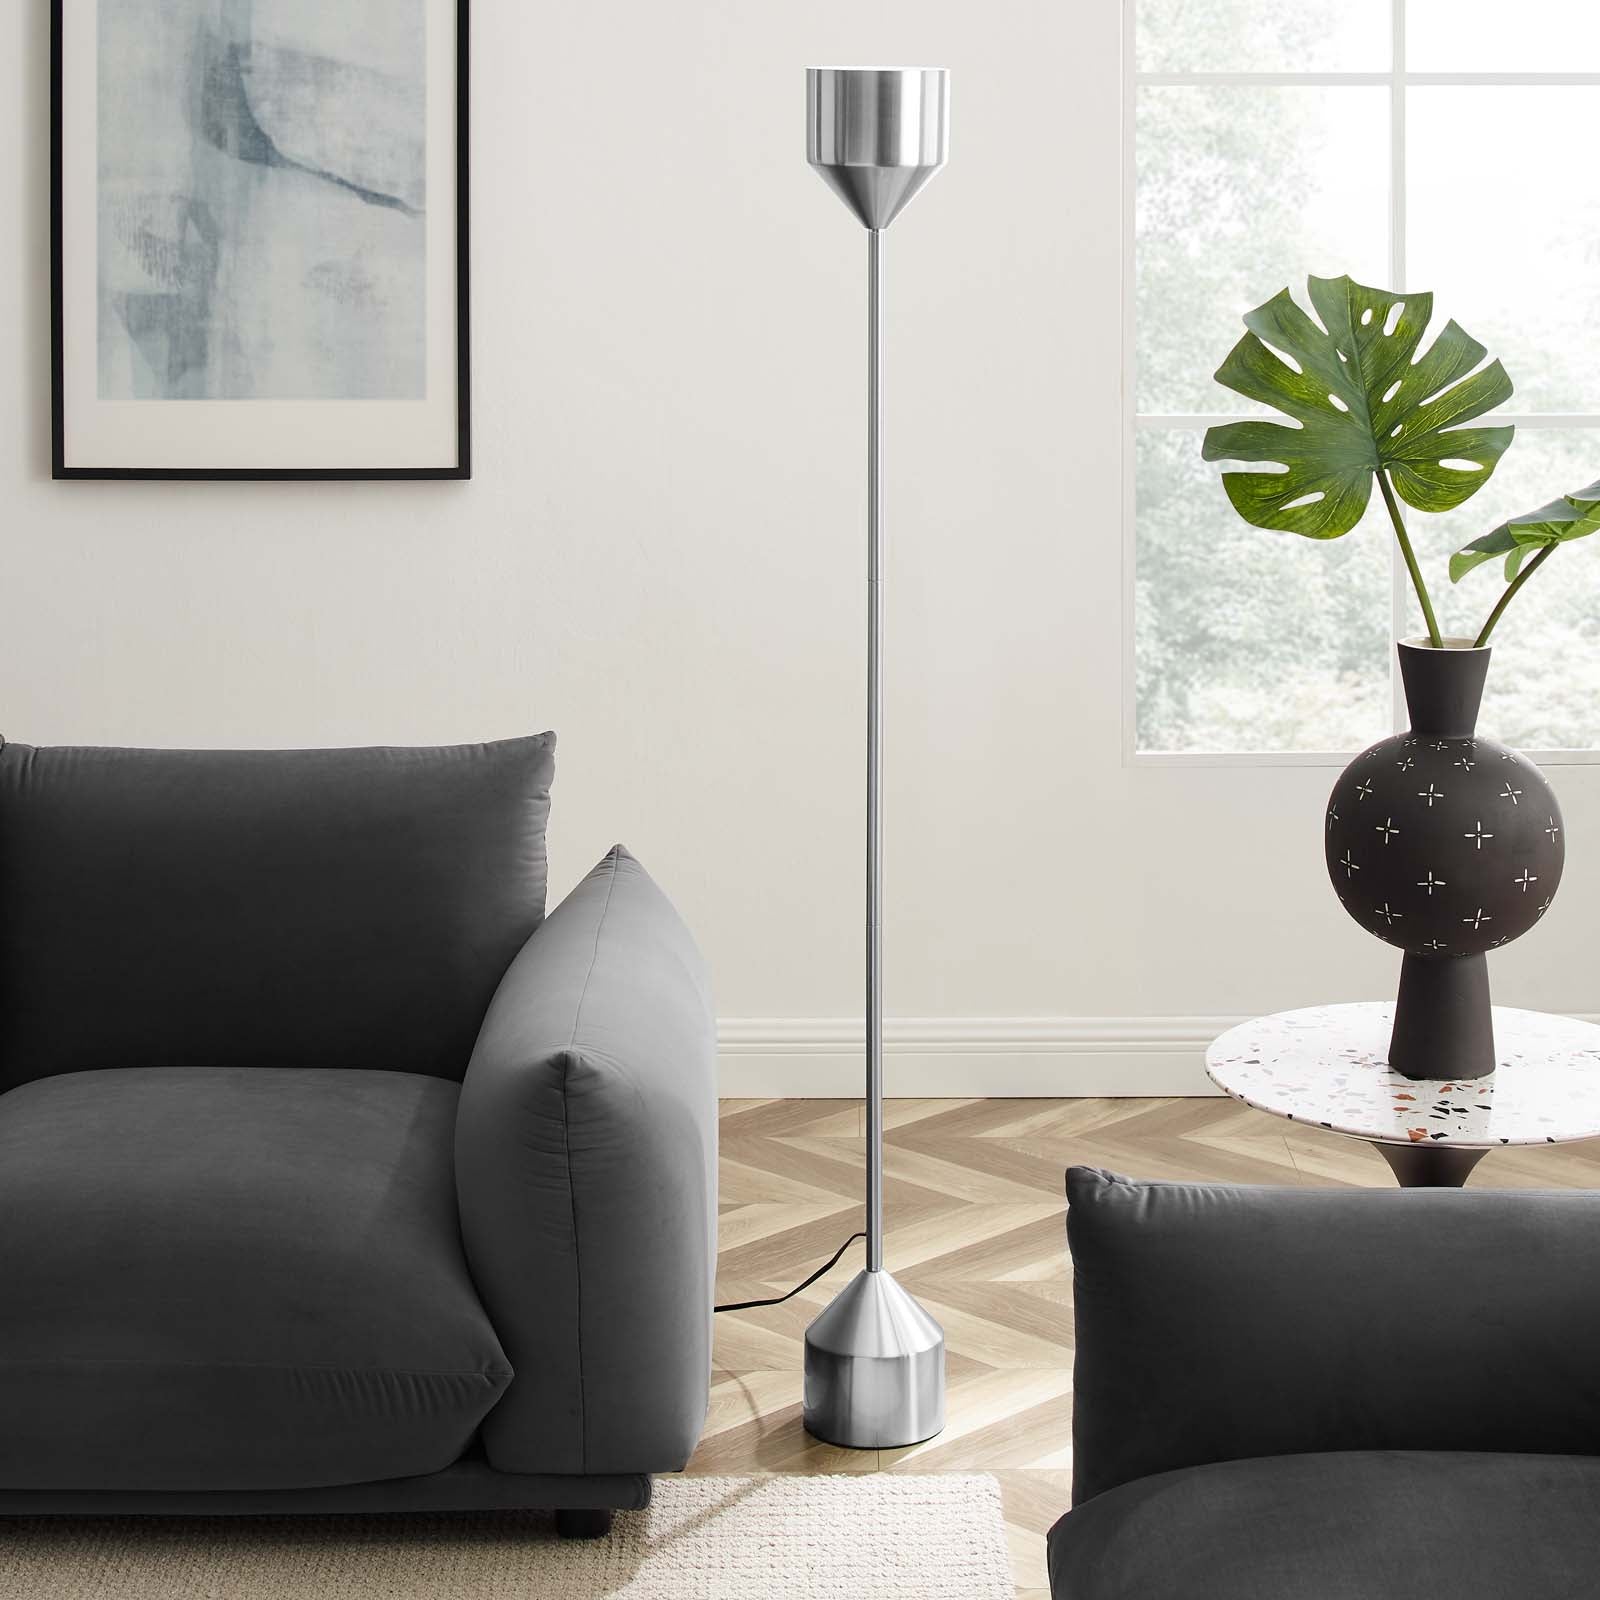 Modway Floor Lamps - Kara Standing Floor Lamp Silver